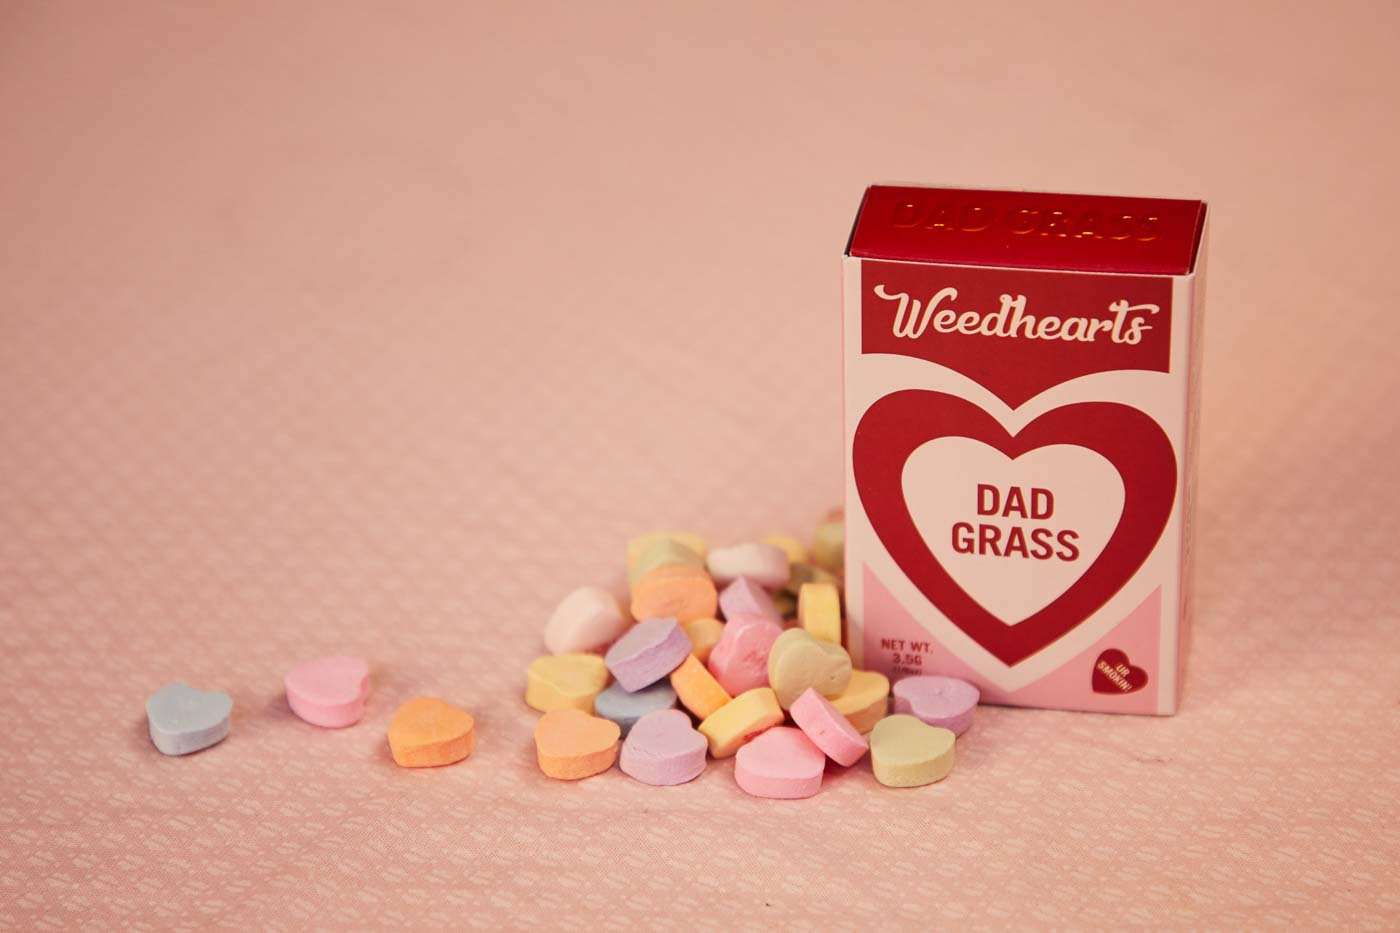 Dad Grass Weedhearts 5 Pack Dad Stash Best Price